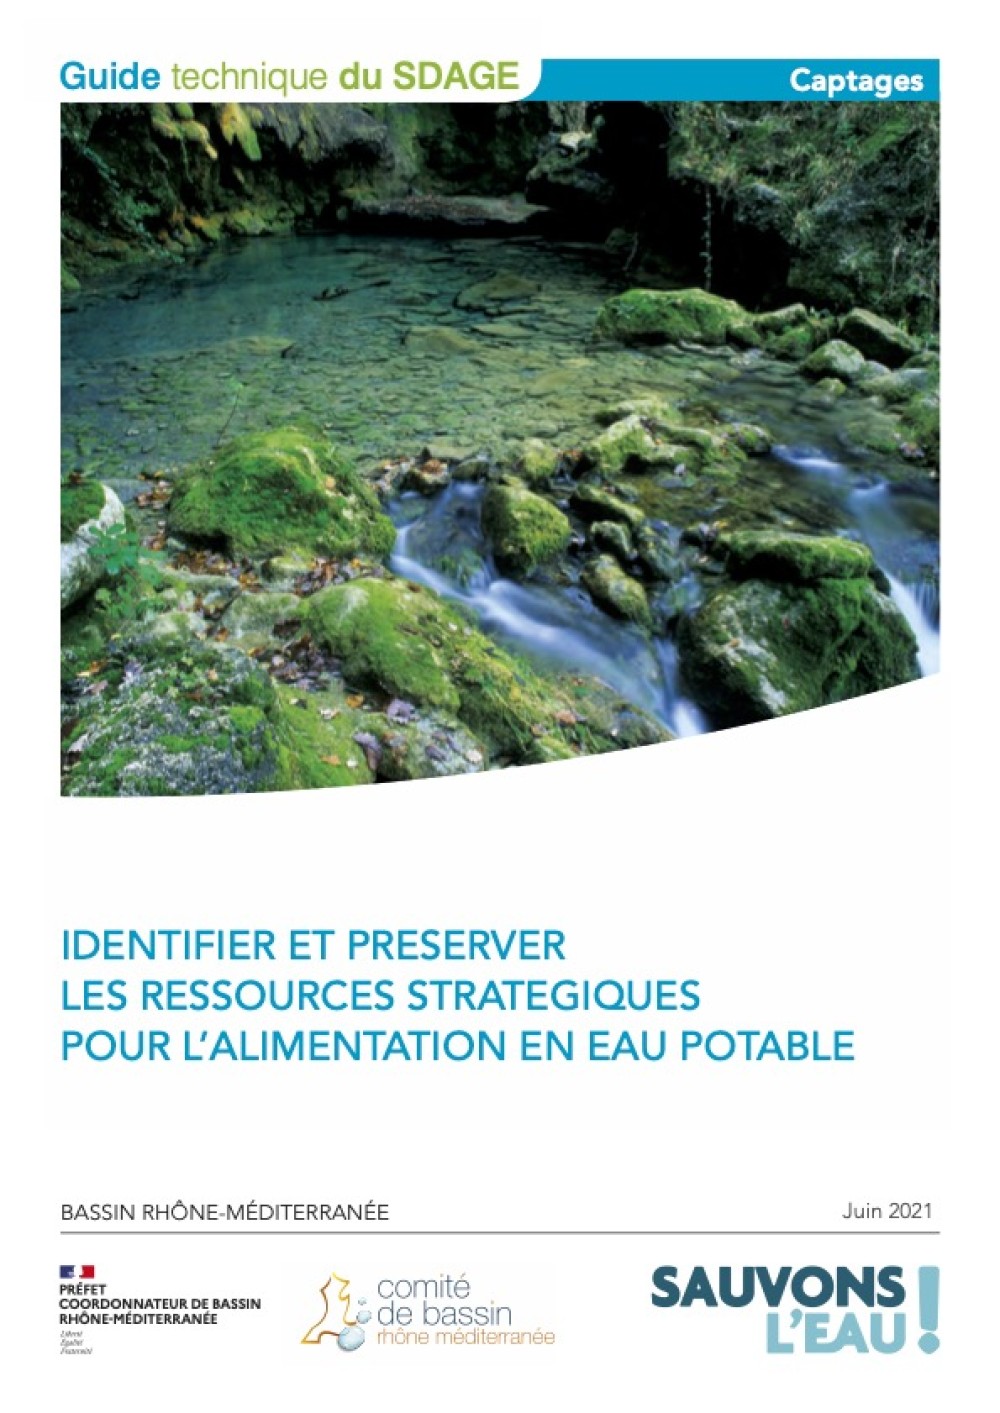 [Publication] Guide technique pour l'identification et la préservation des ressources stratégiques en eau potable du bassin Rhône-Méditerranée